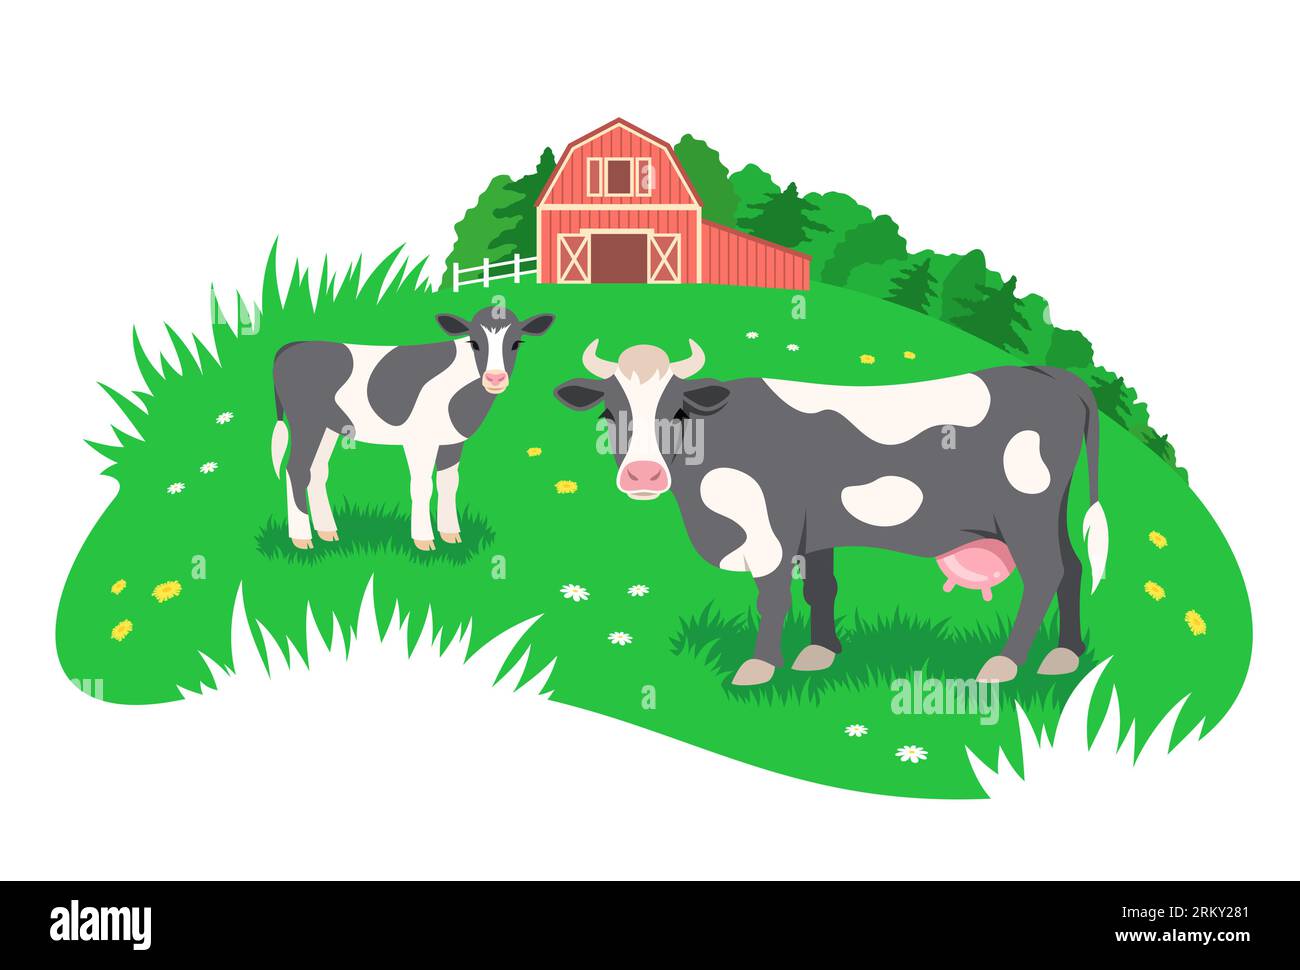 Vaca blanca y negra con un pequeño ternero pastando en el prado verde. Granero de granja roja en la distancia. Ganado de granja libre, concepto de agricultura ecológica. Plano sencillo Ilustración del Vector